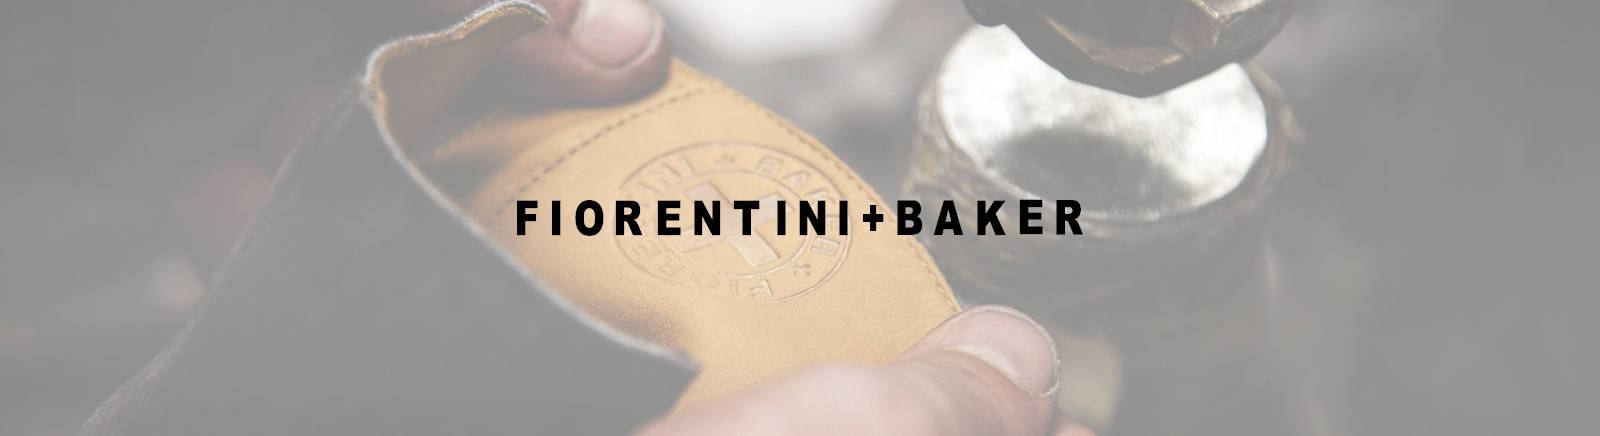 Fiorentini & baker - Der TOP-Favorit unter allen Produkten